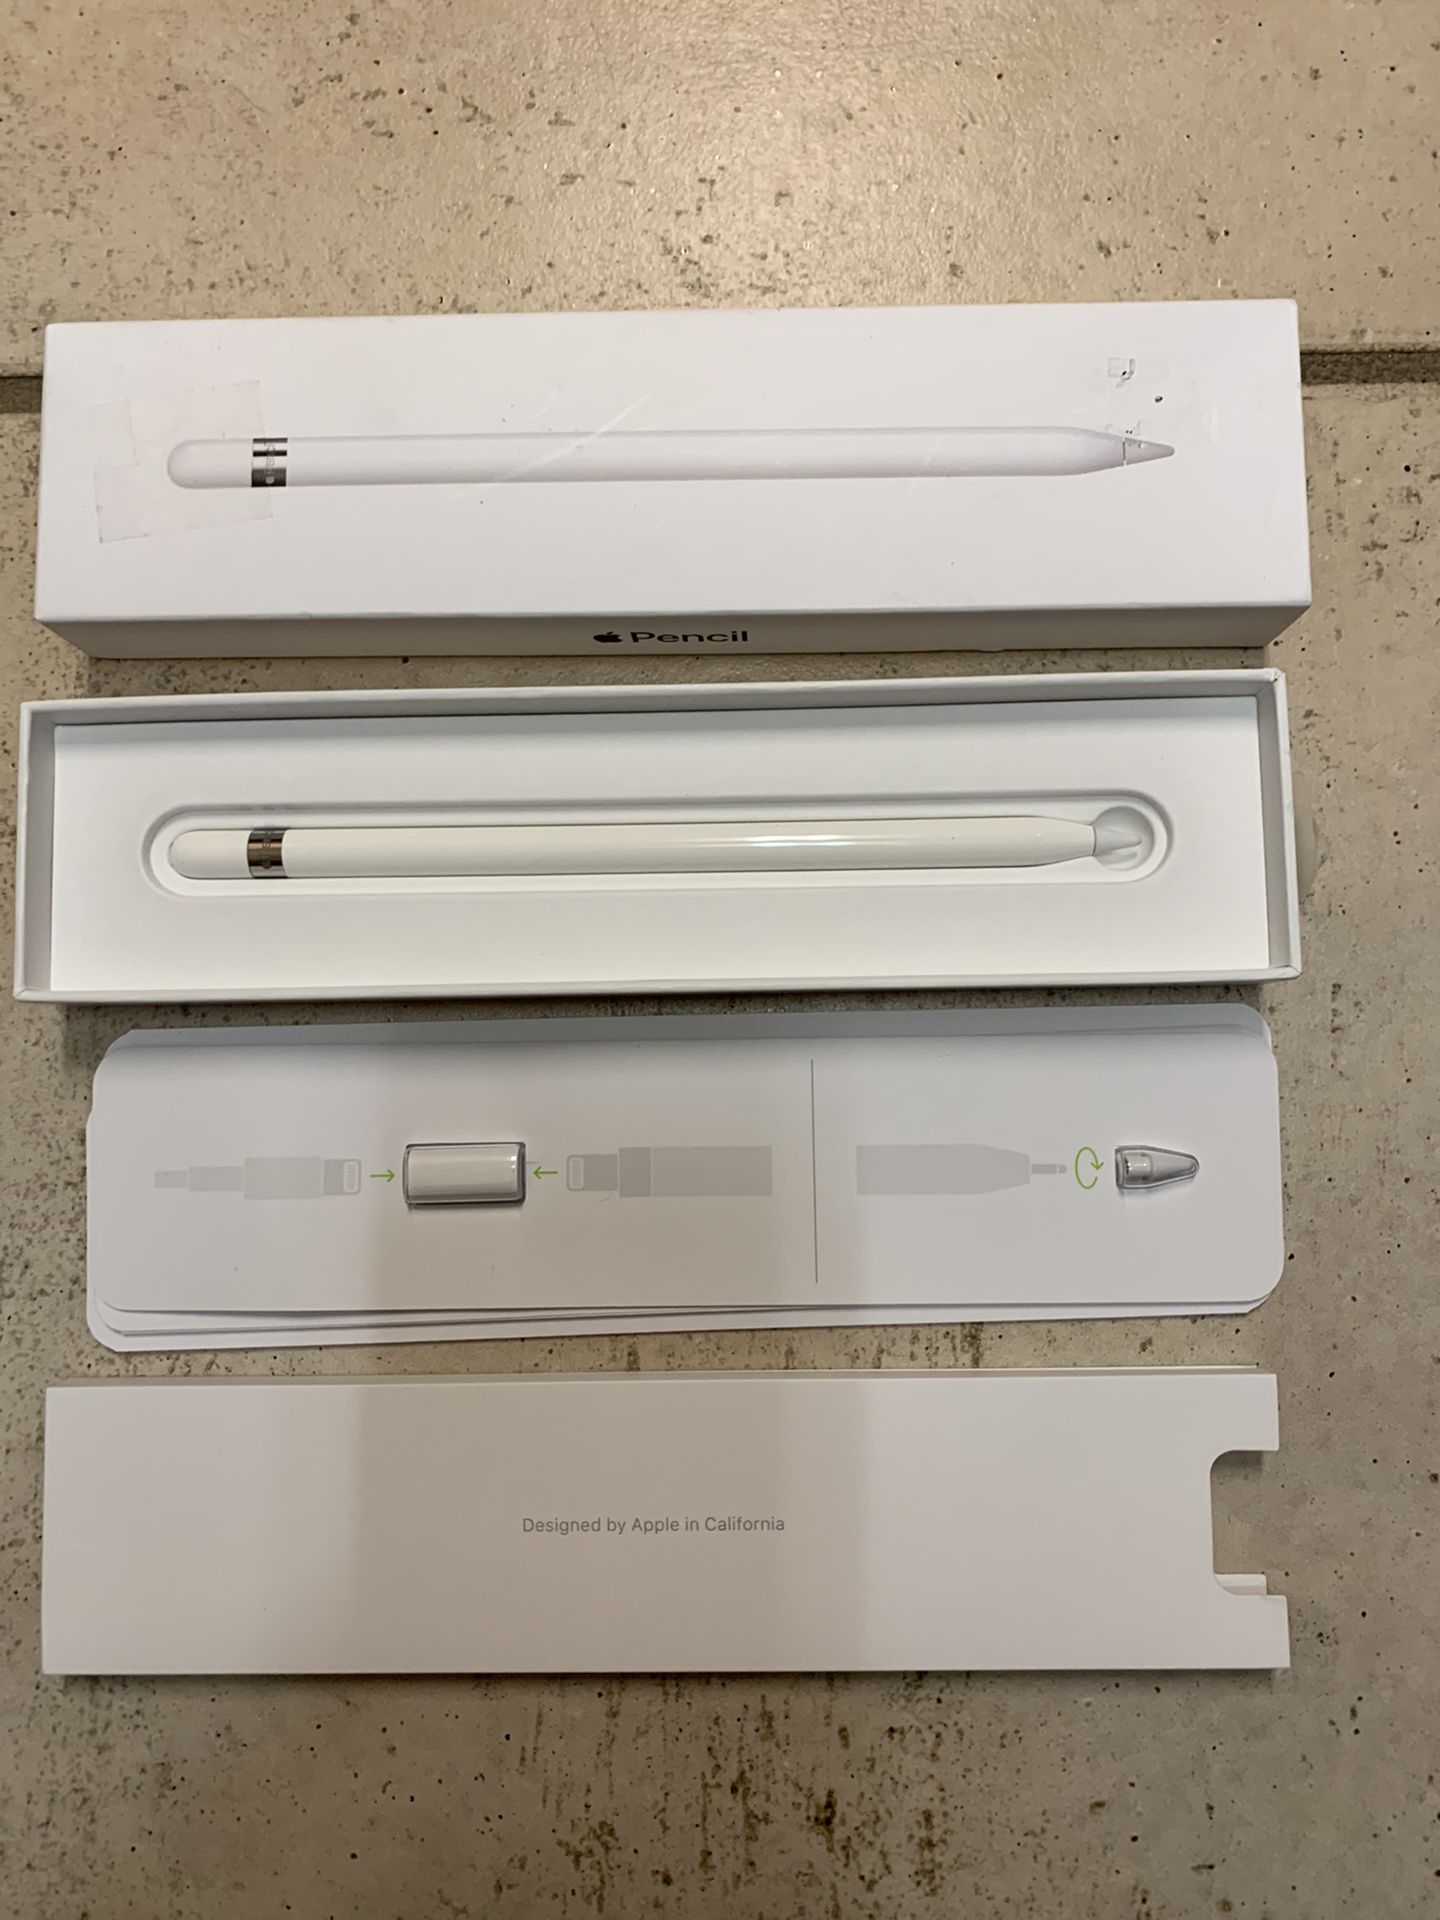 Apple Pencil 1st Gen New Open Box $50 firm